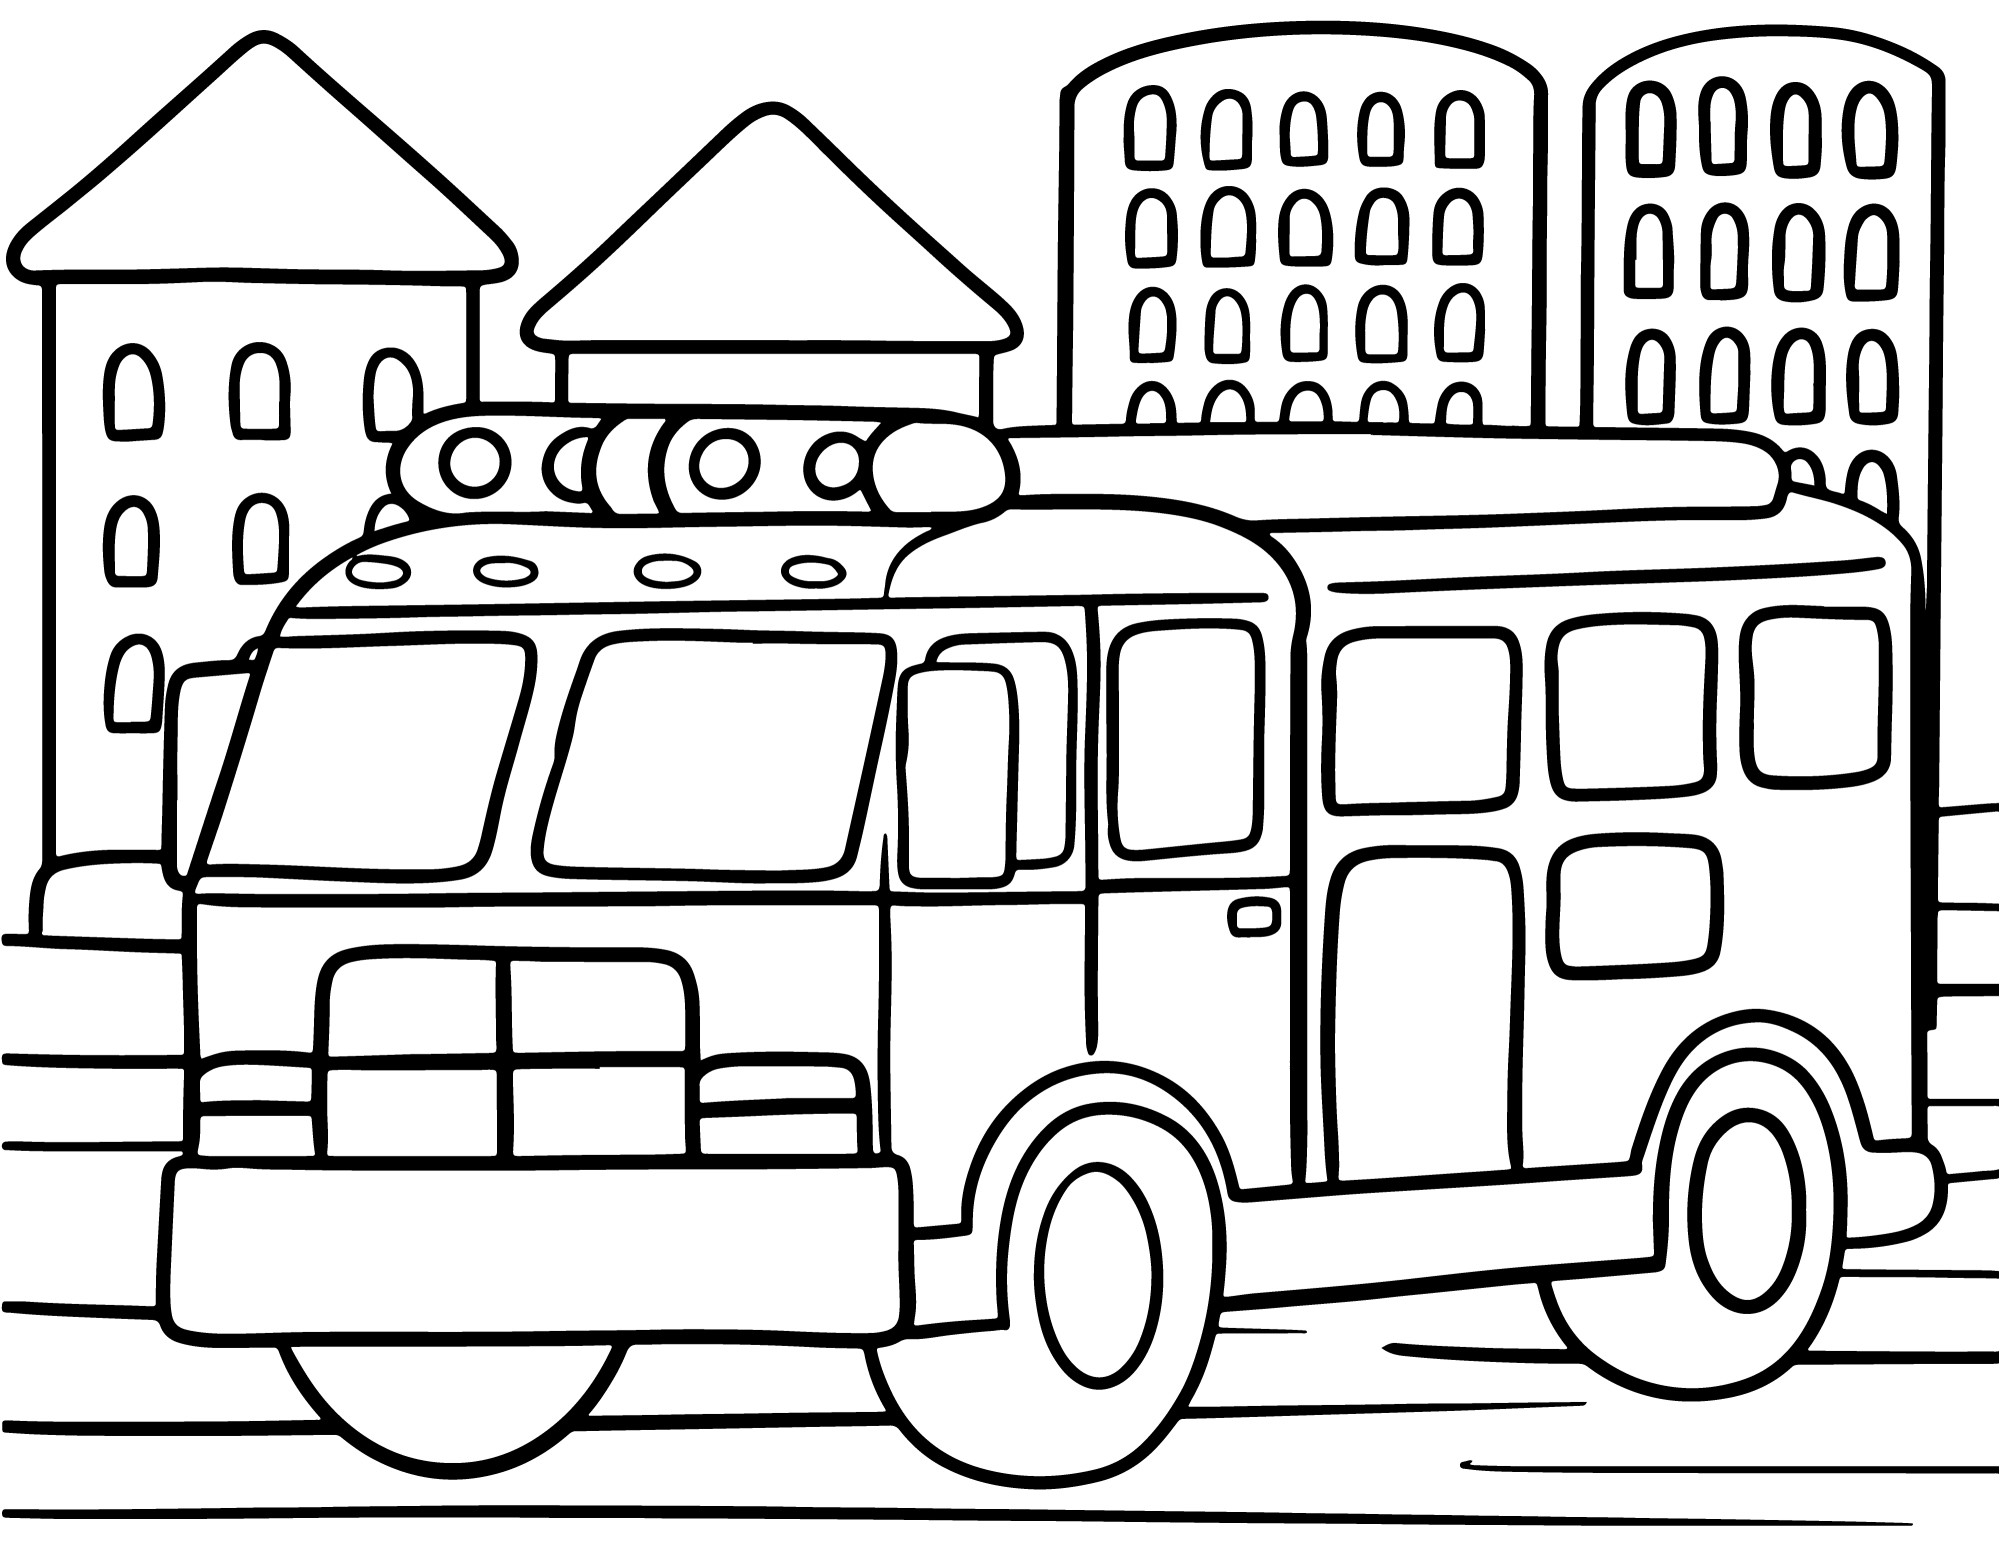 Раскраска для детей: пожарная машина на фоне города